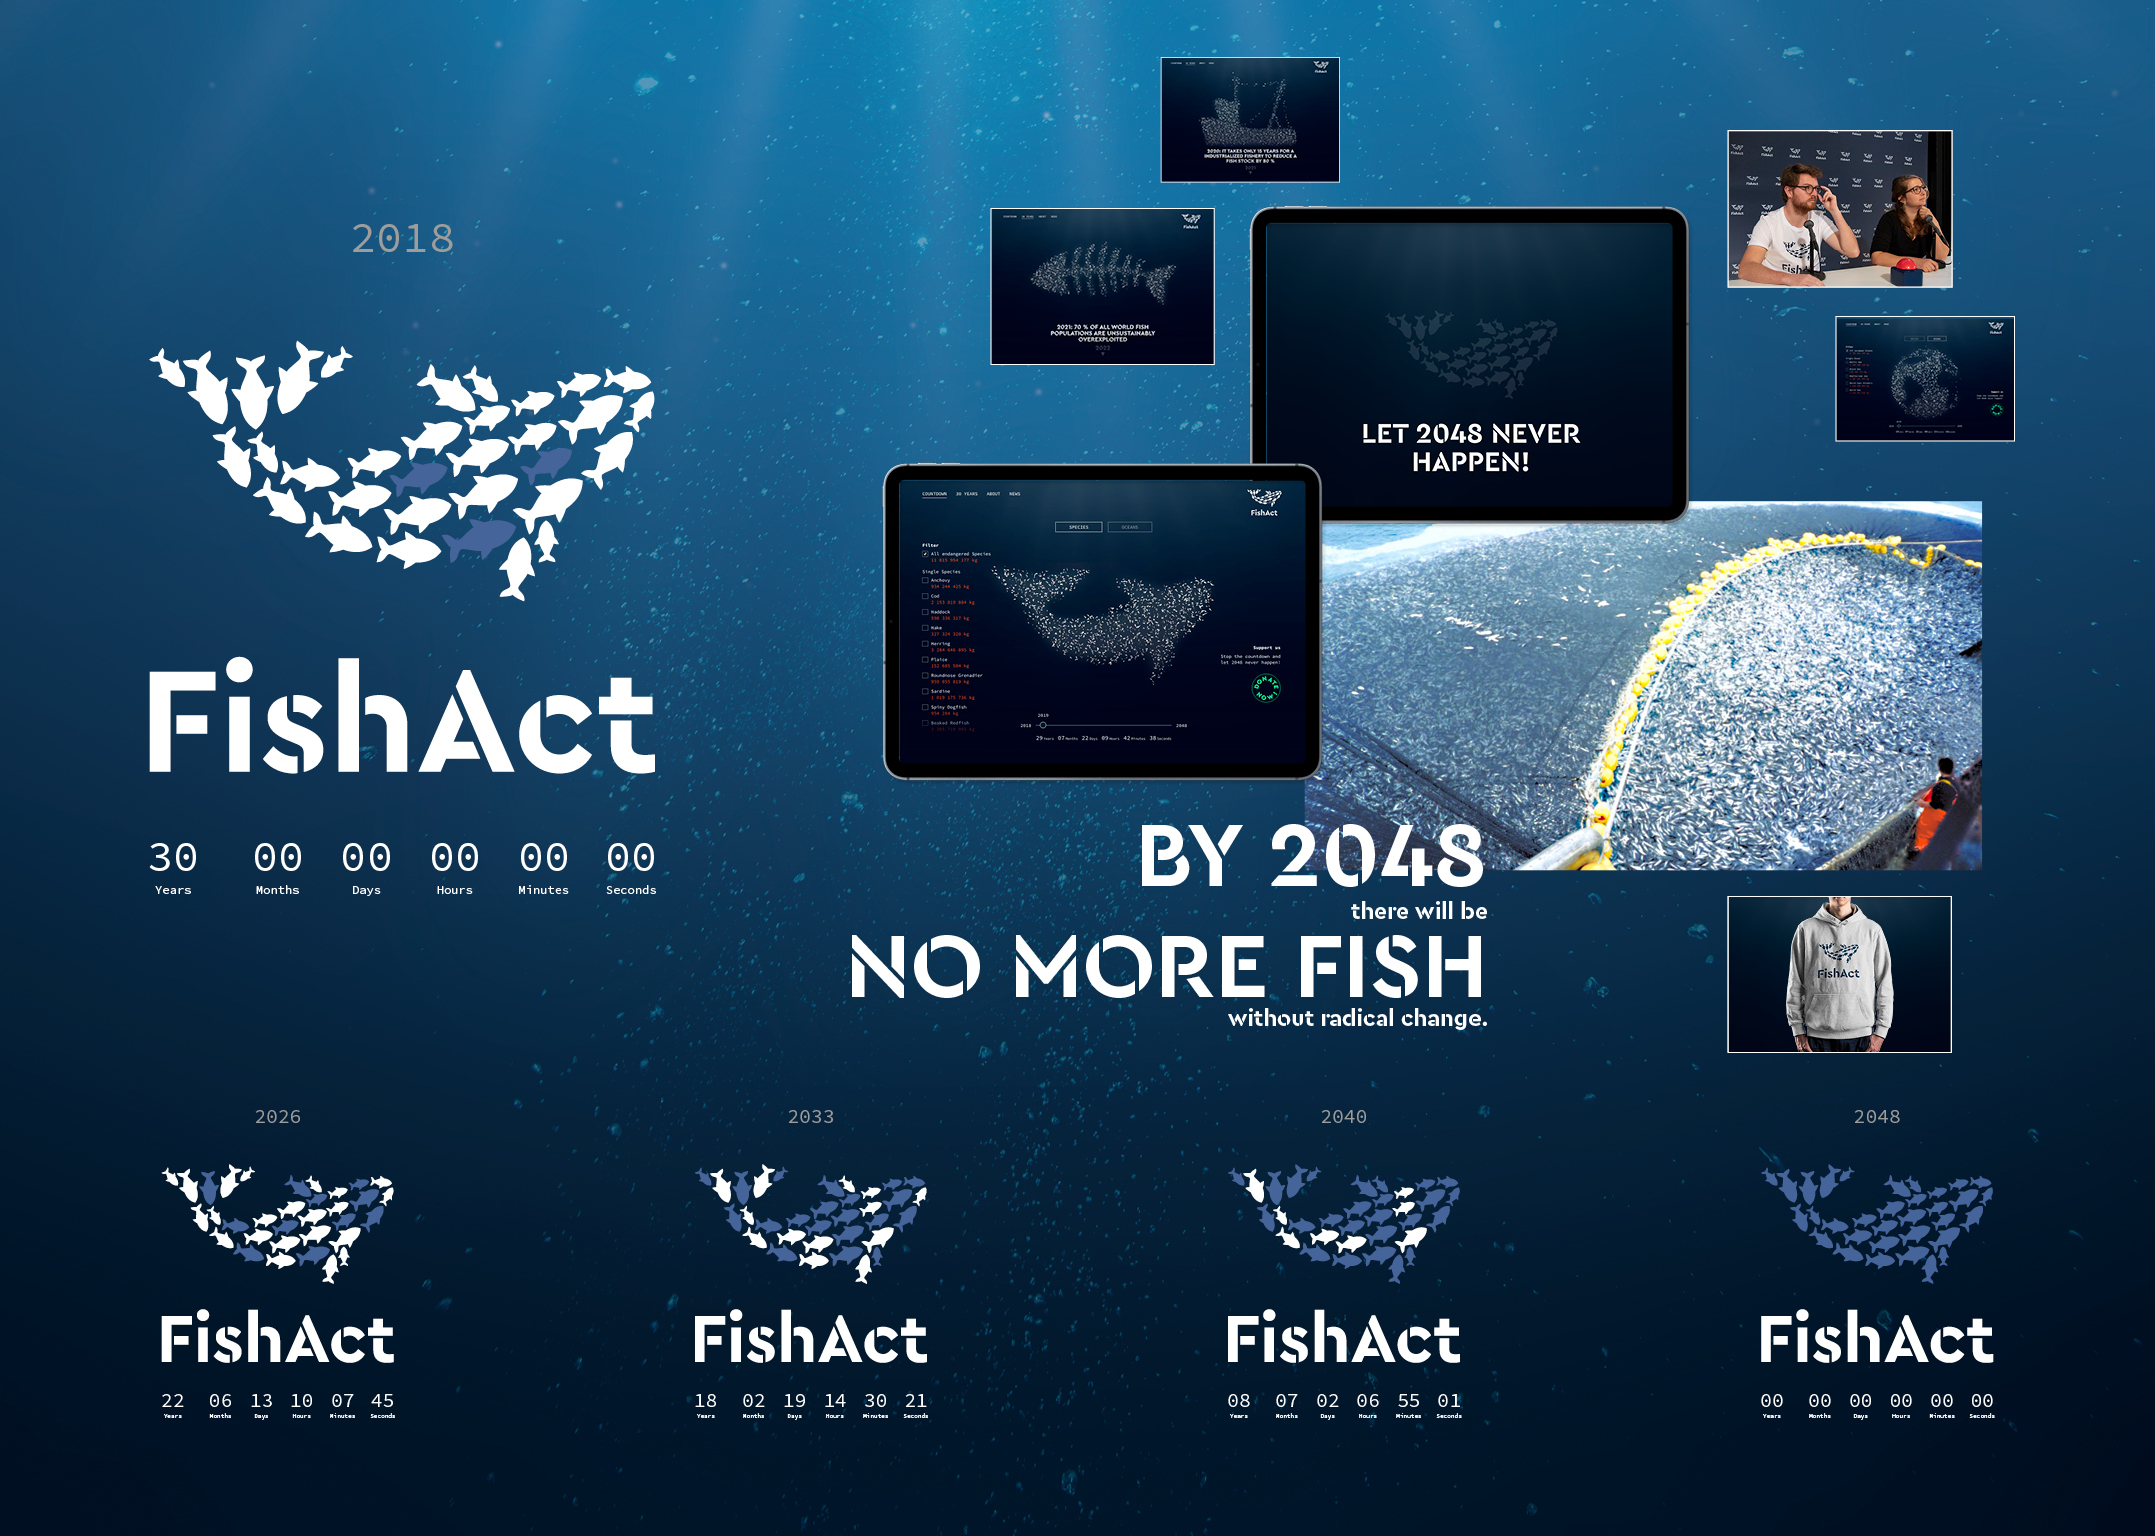 FishAct – Stop overfishing